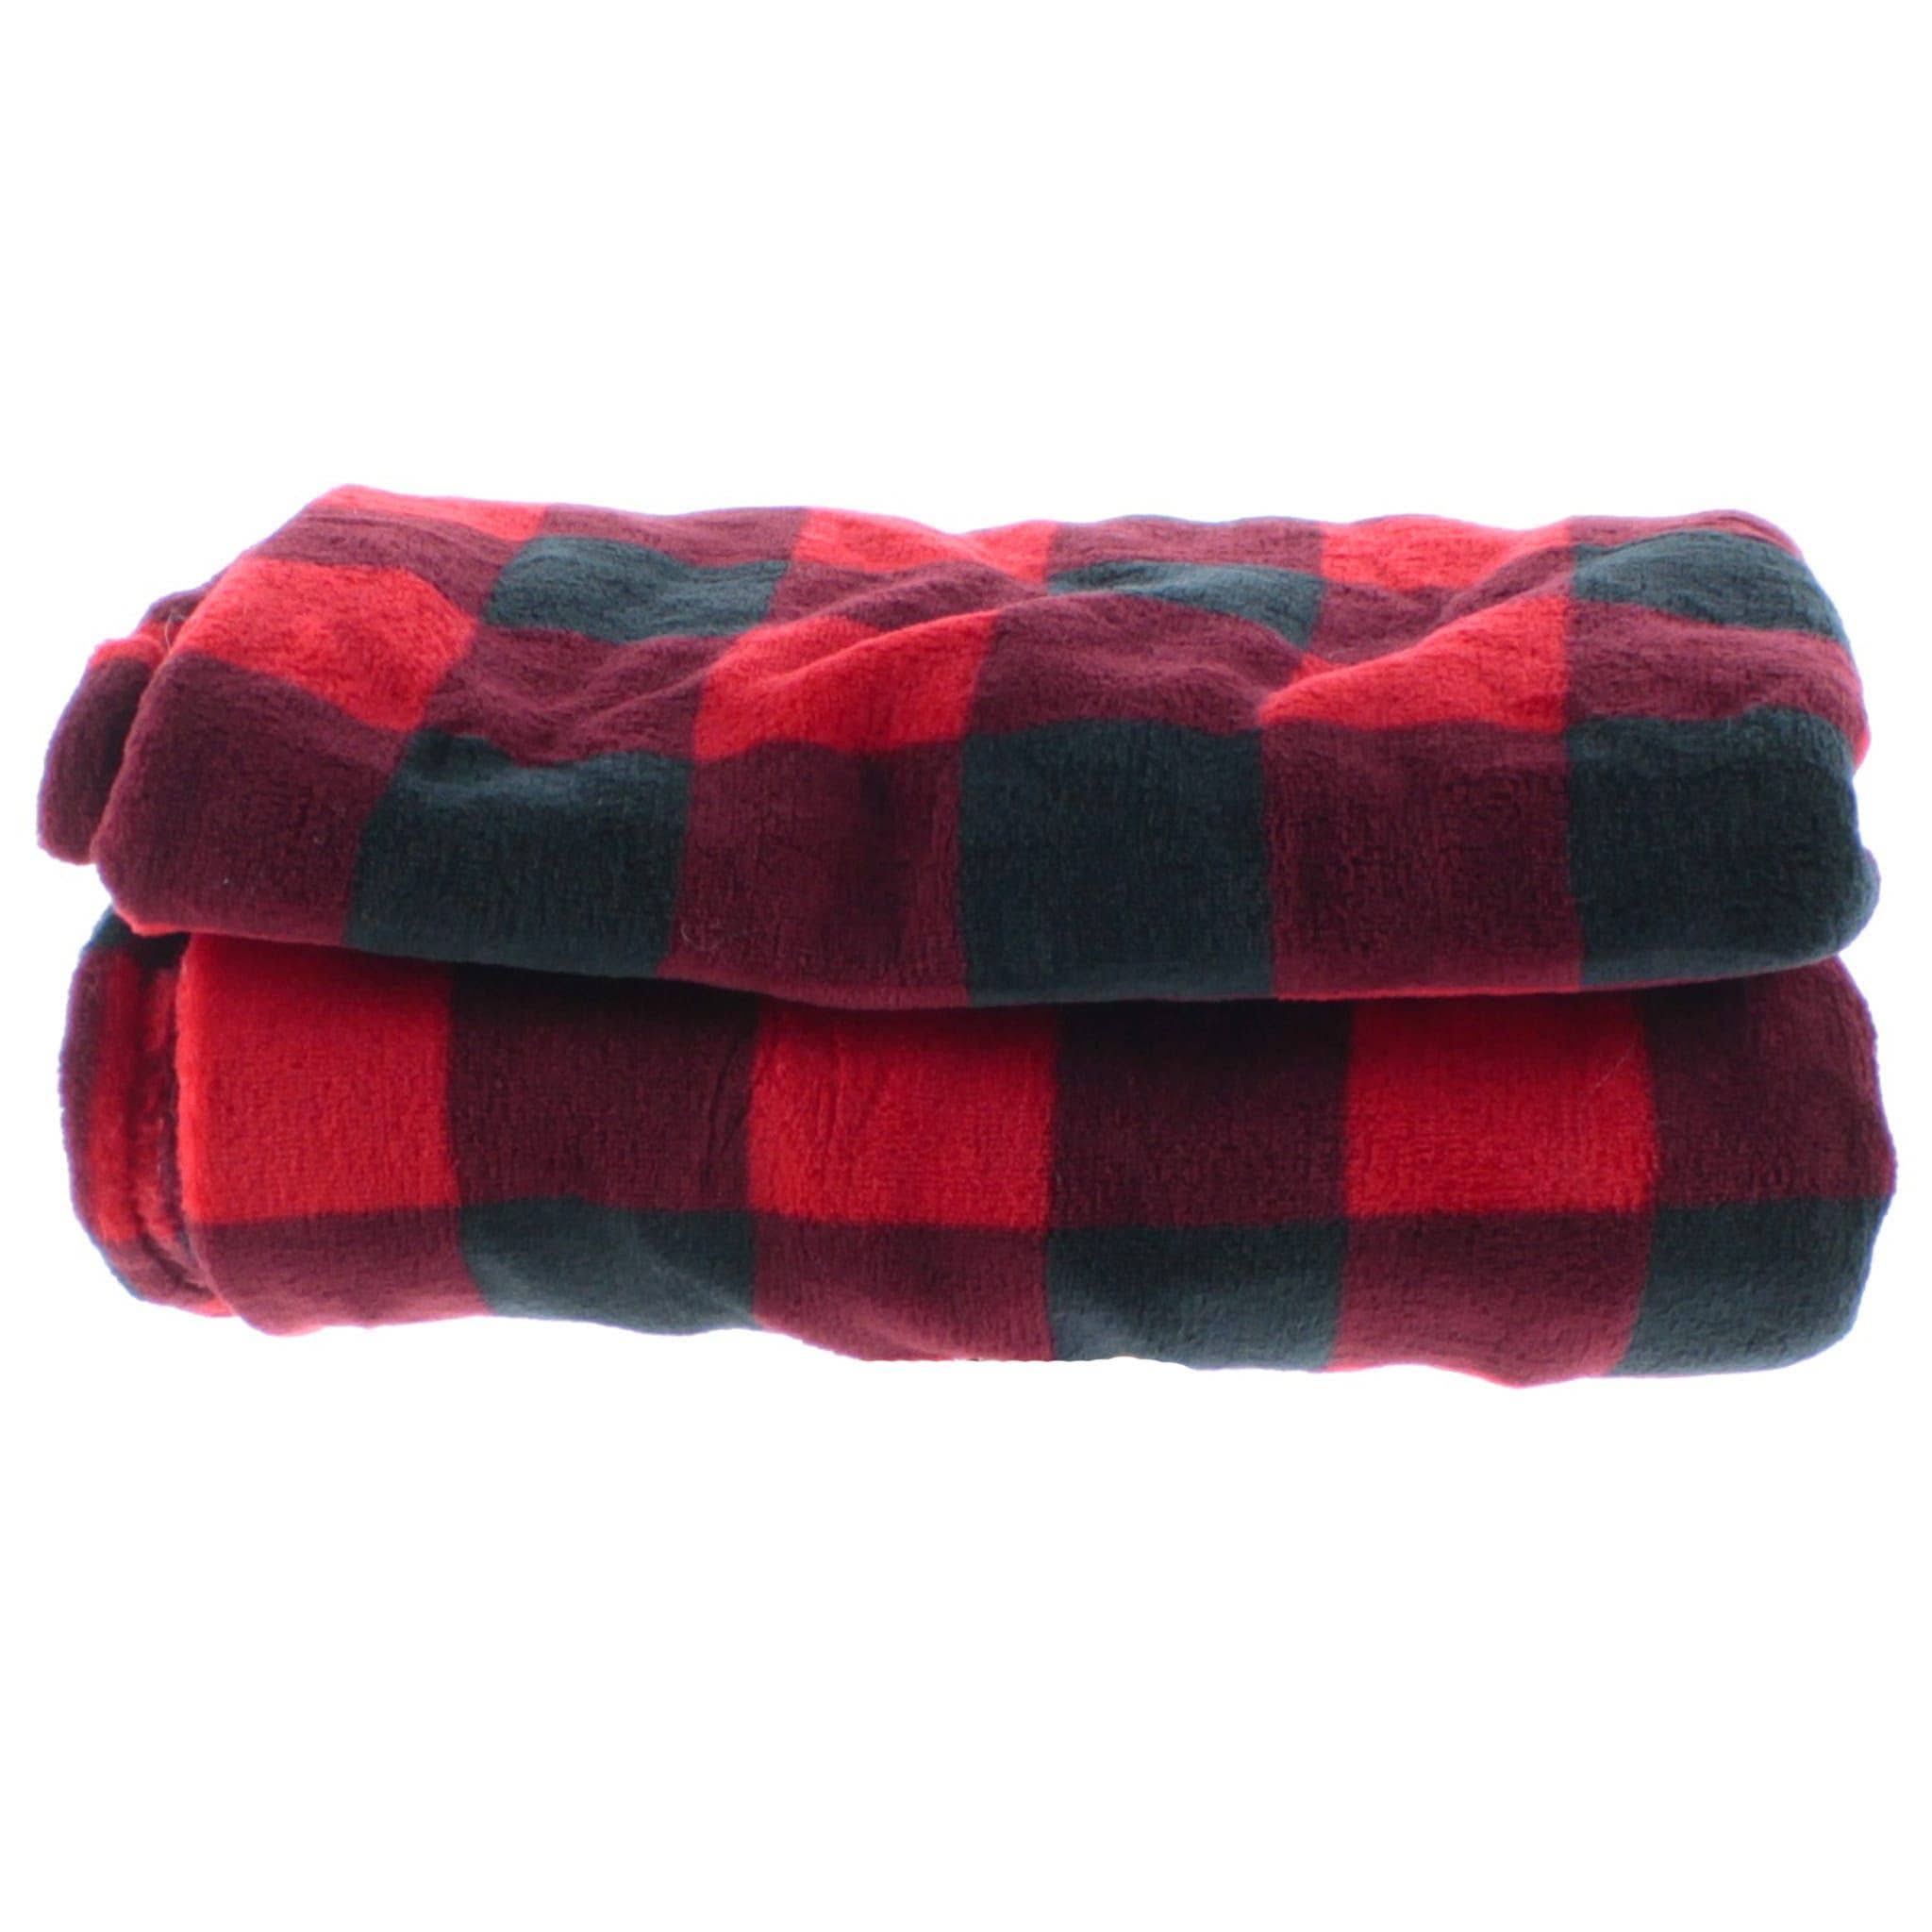 Car Blanket - Red/Black